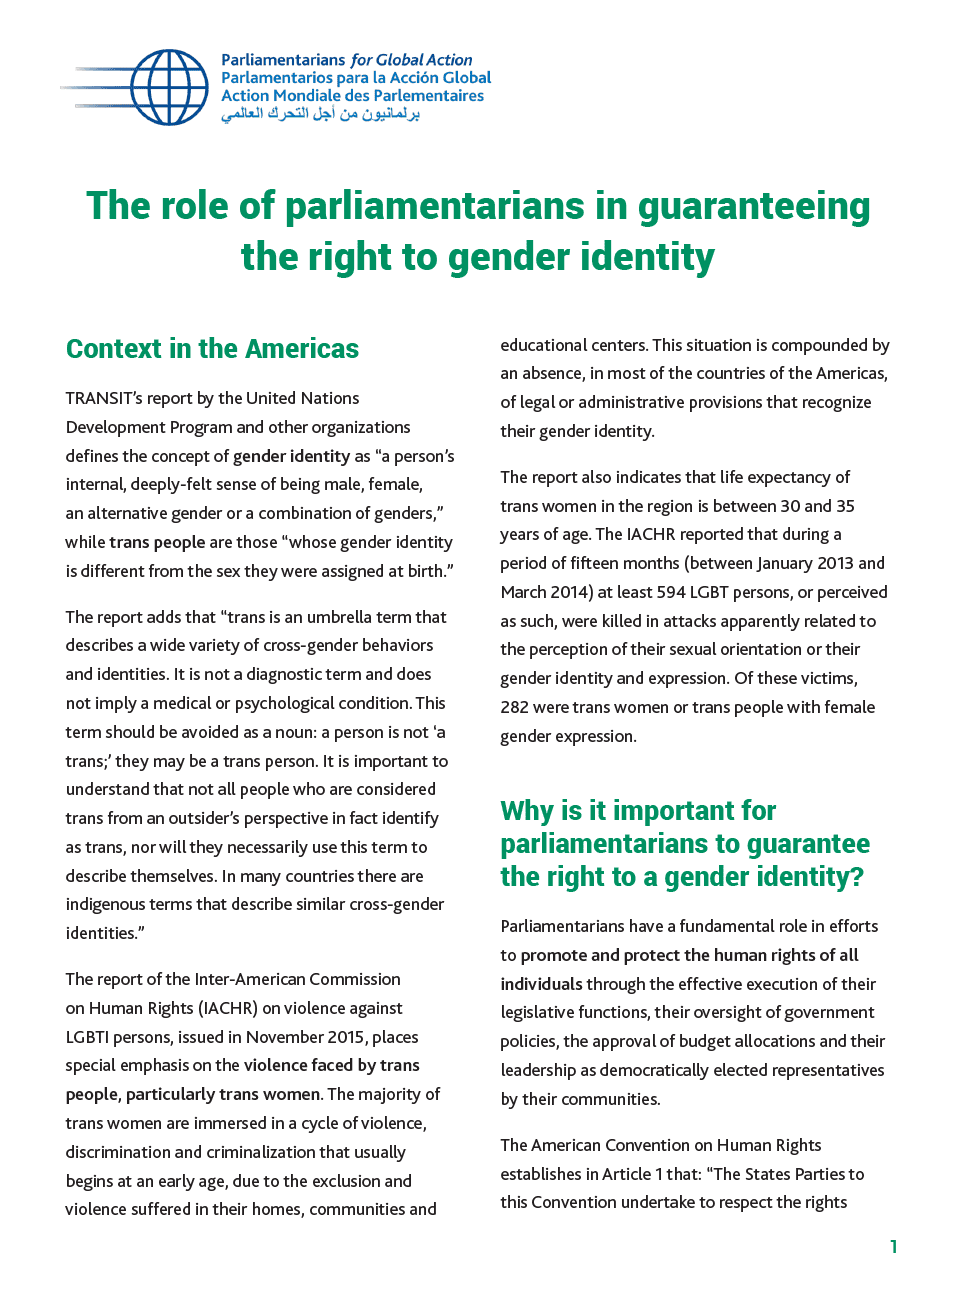 El rol de los parlamentarios en garantizar el derecho a la identidad de género